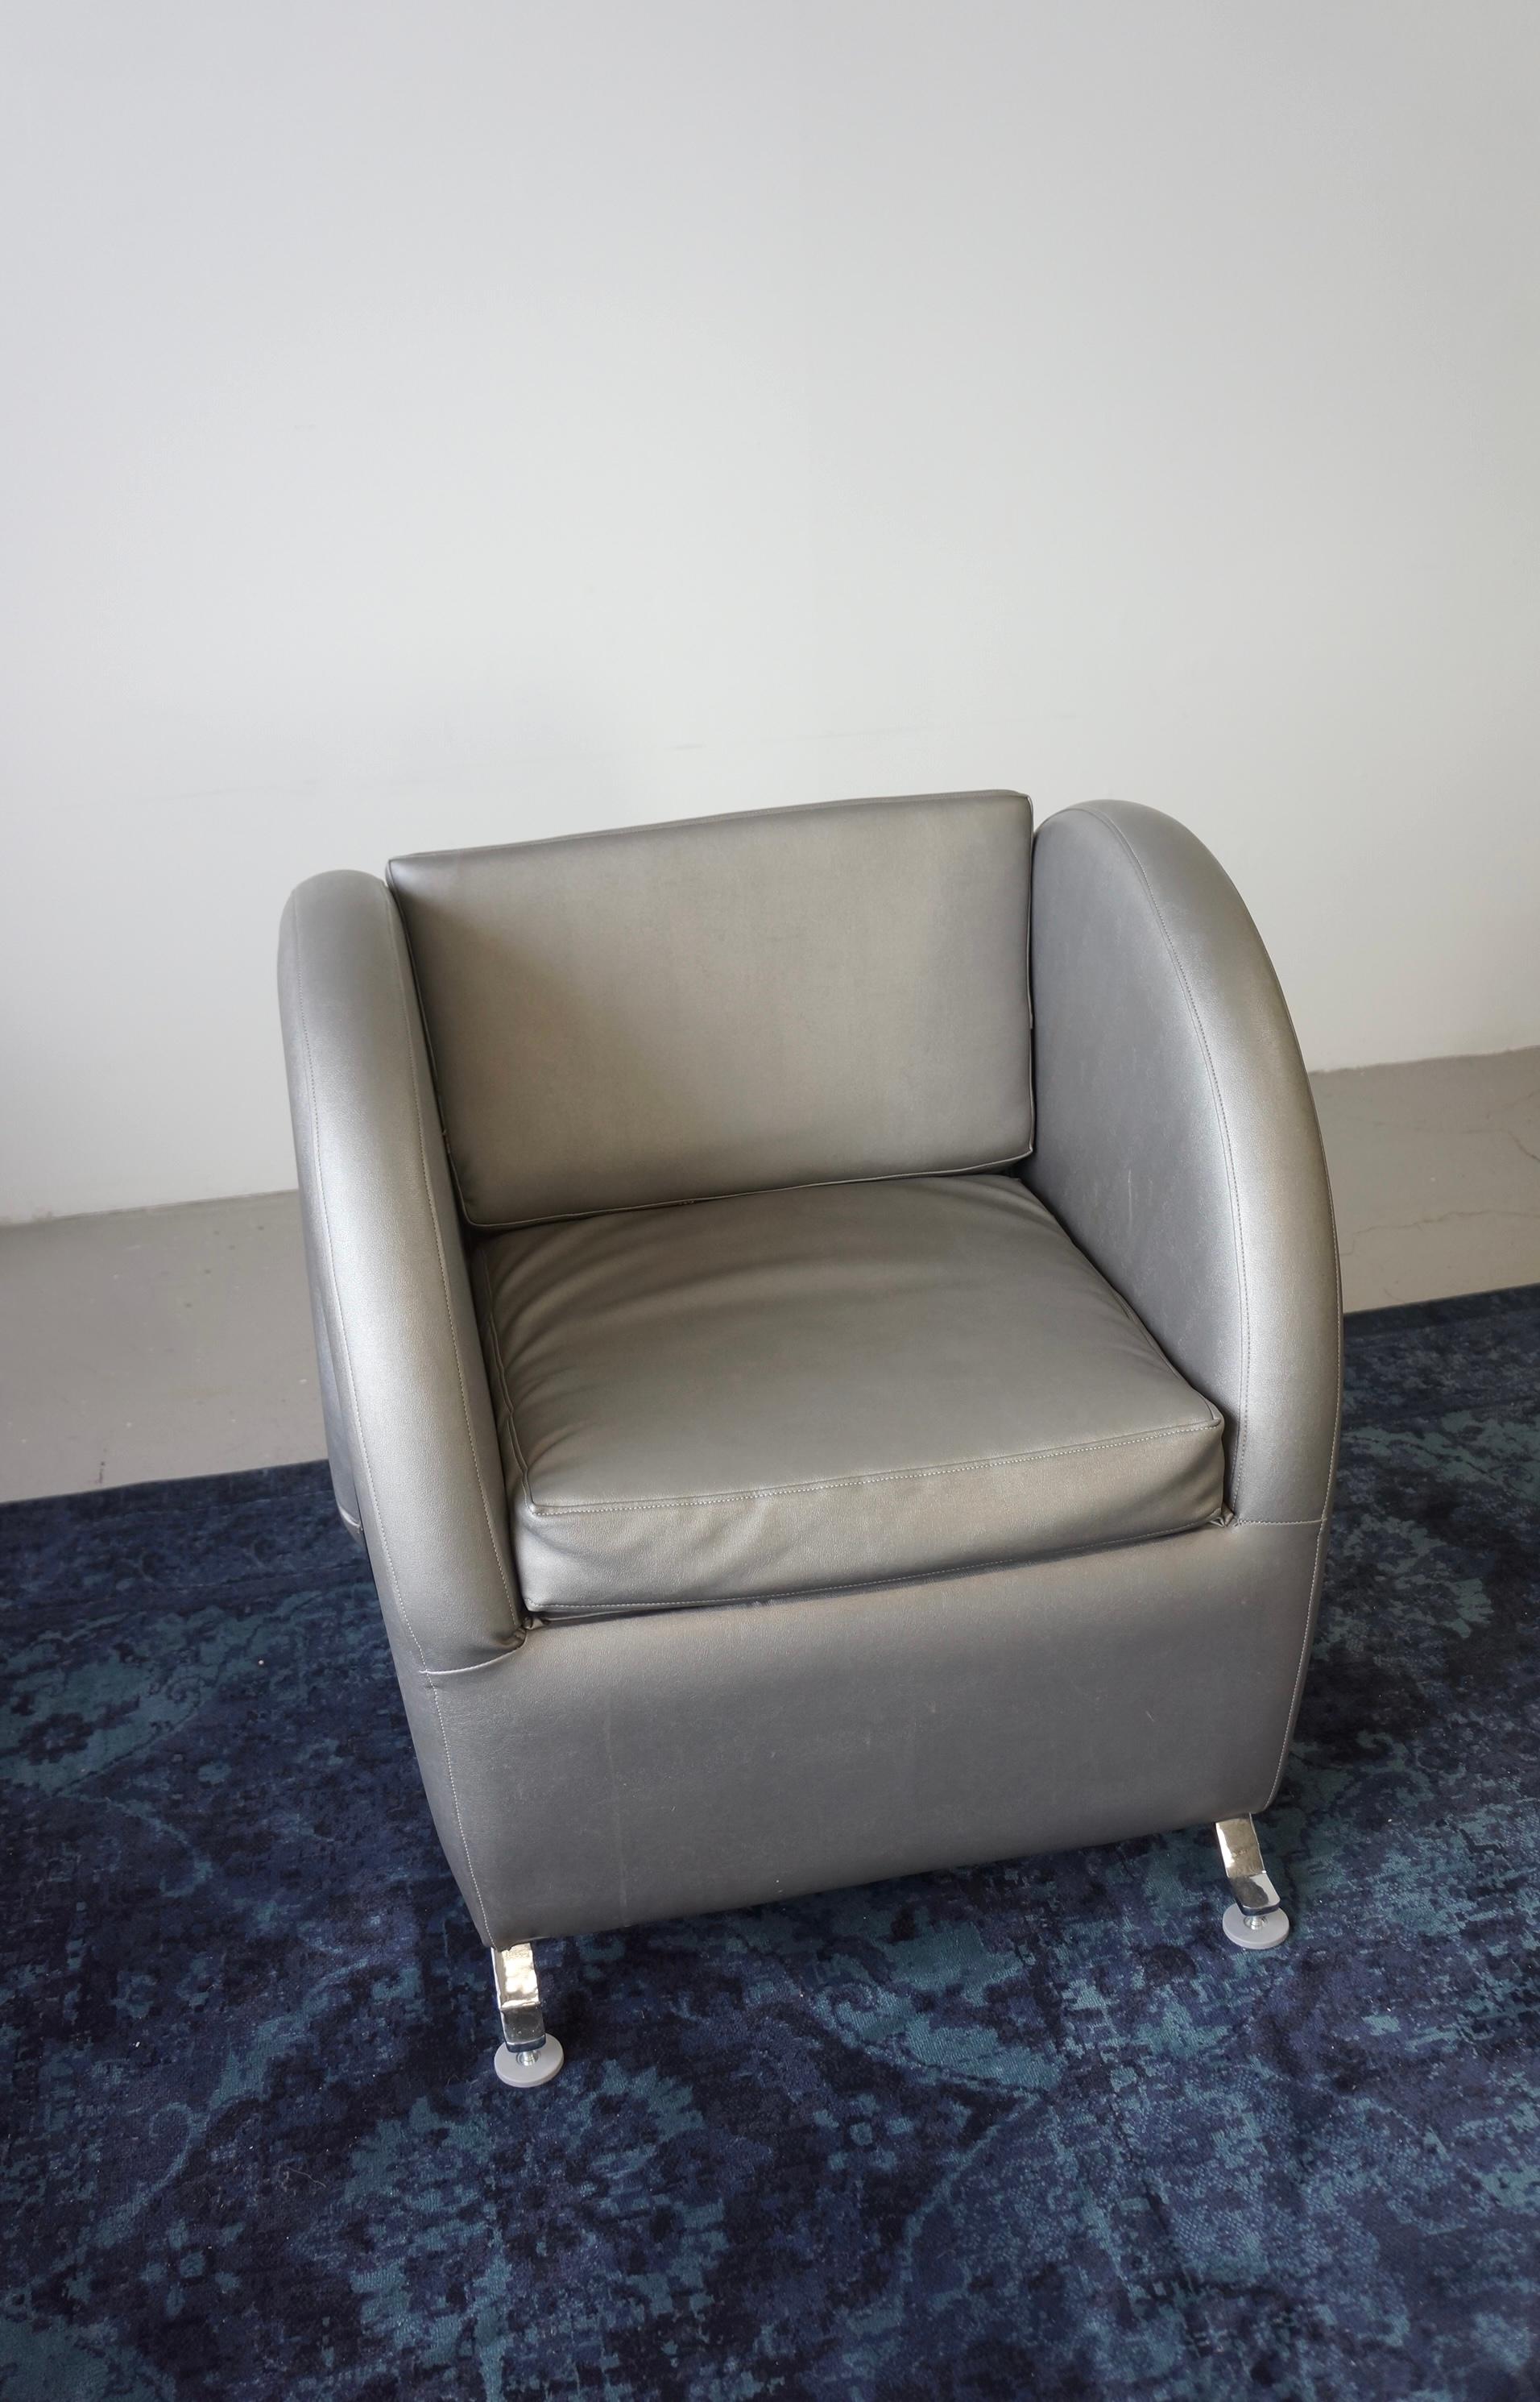 La chaise 'virgola' a été conçue par Yaacov Kaufman pour Arflex et fabriquée en 1991. Cette chaise doit son nom à sa forme 